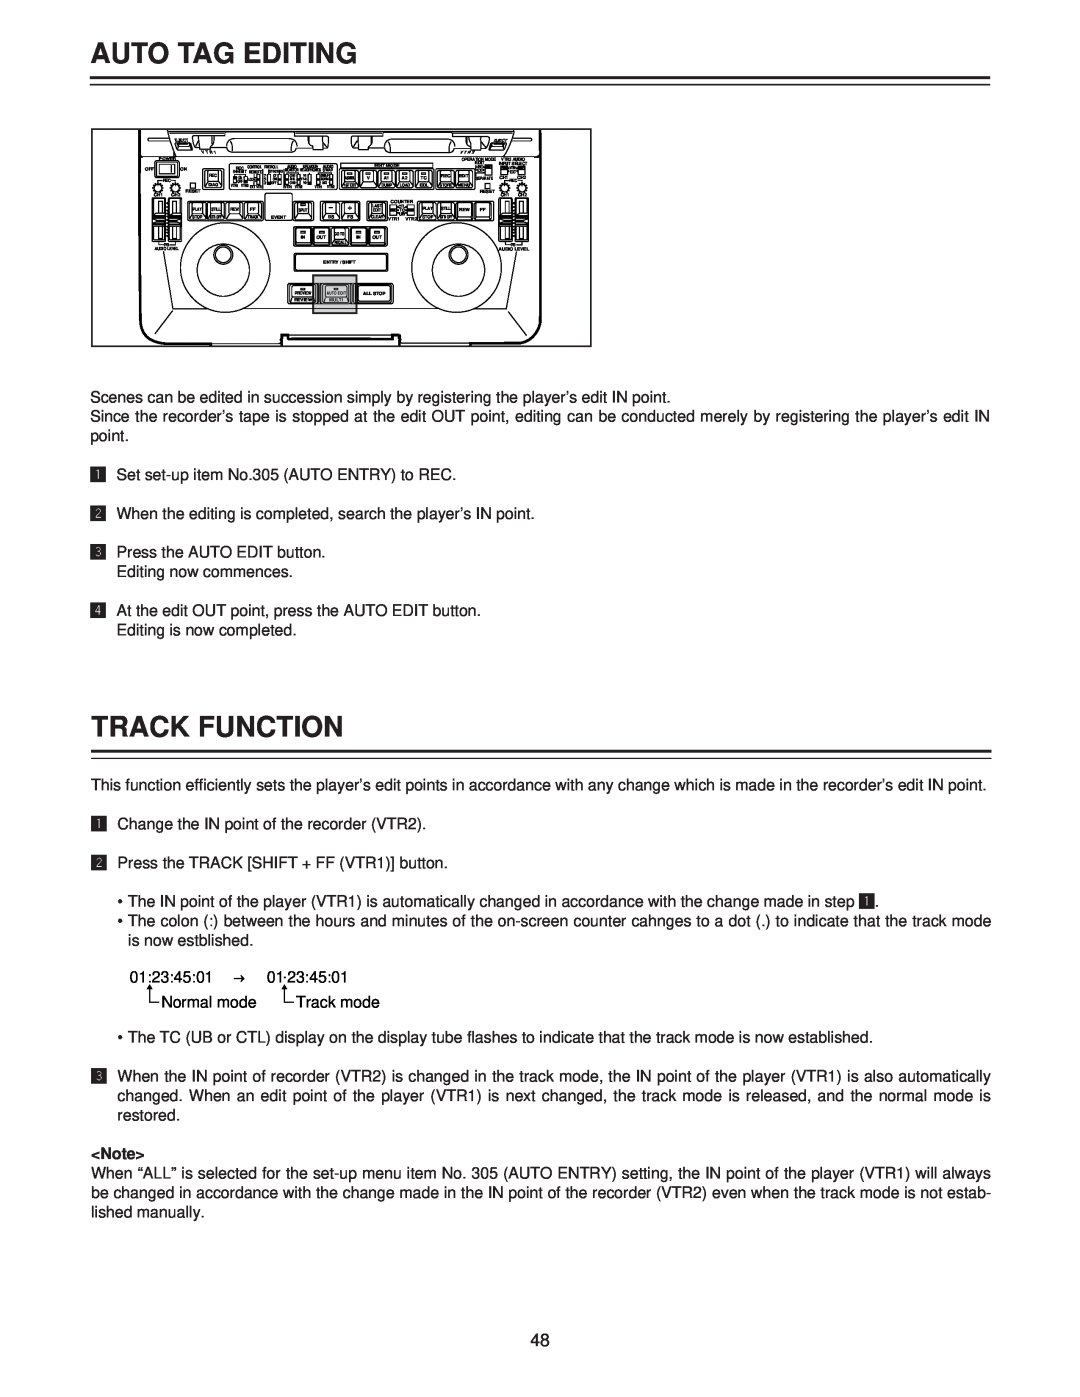 Panasonic AJ-LT85P manual Auto Tag Editing, Track Function 